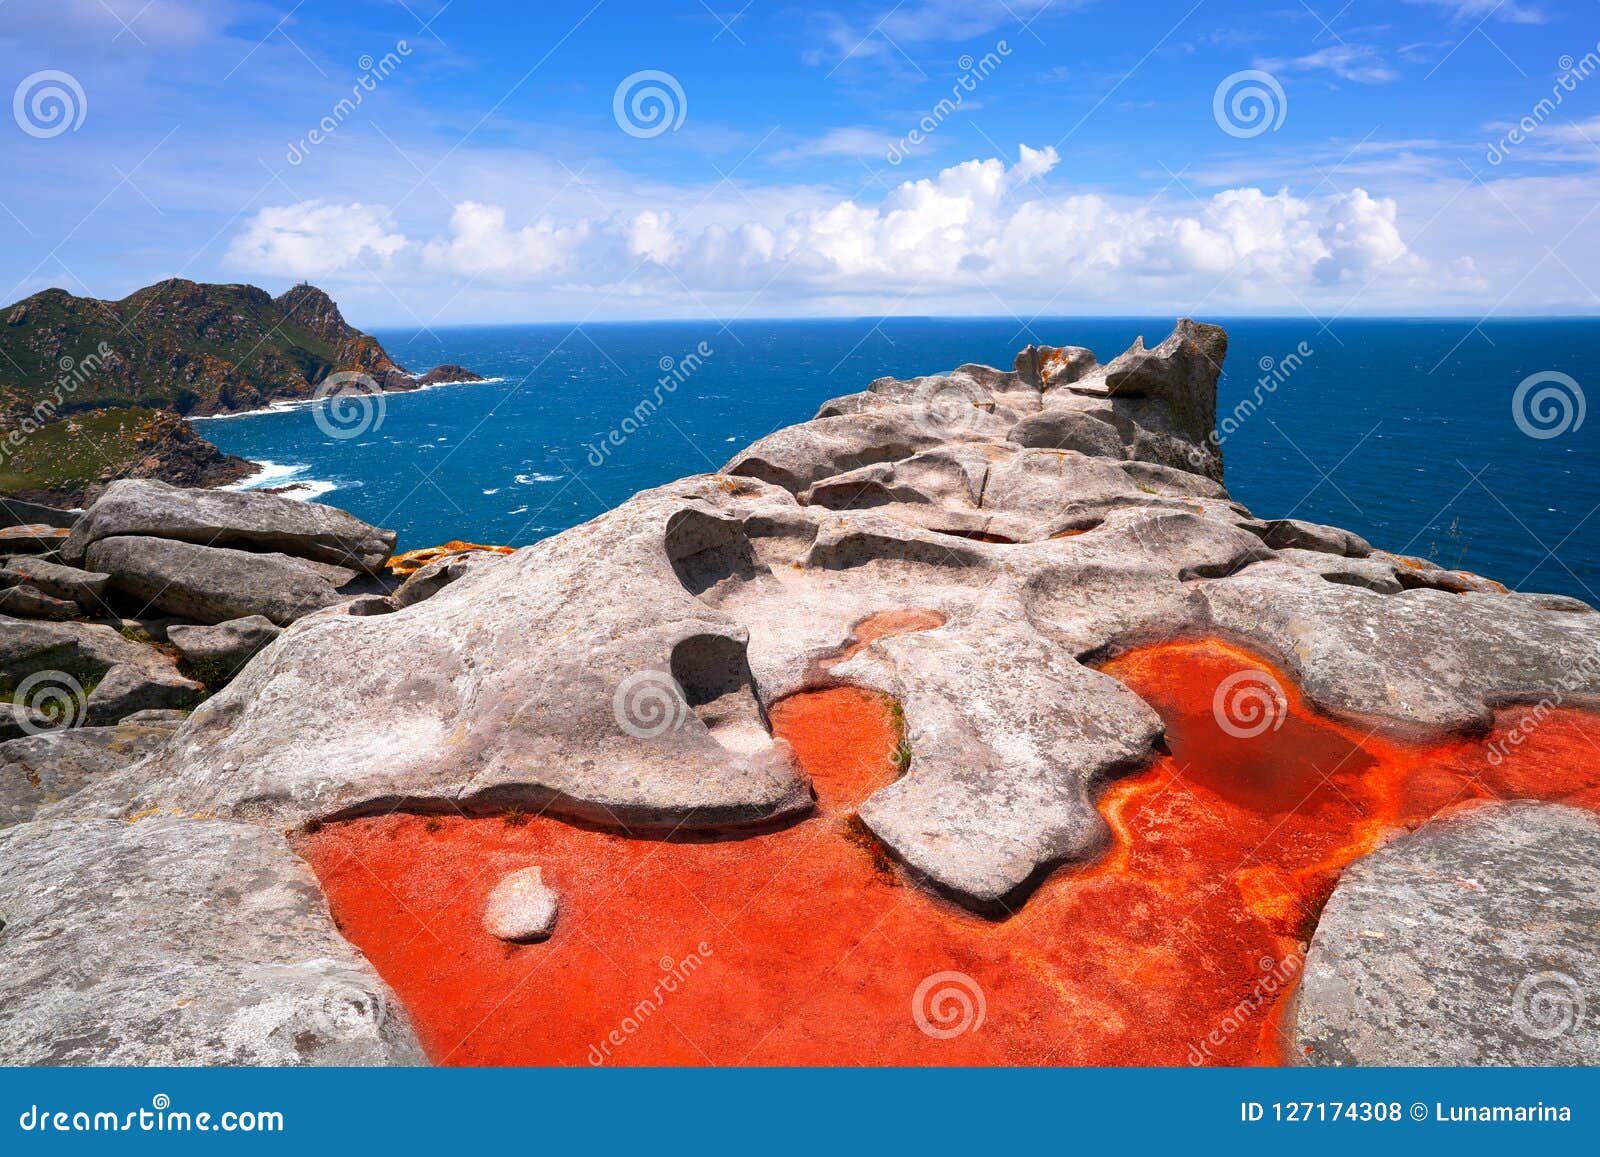 alto do principe view point in islas cies islands